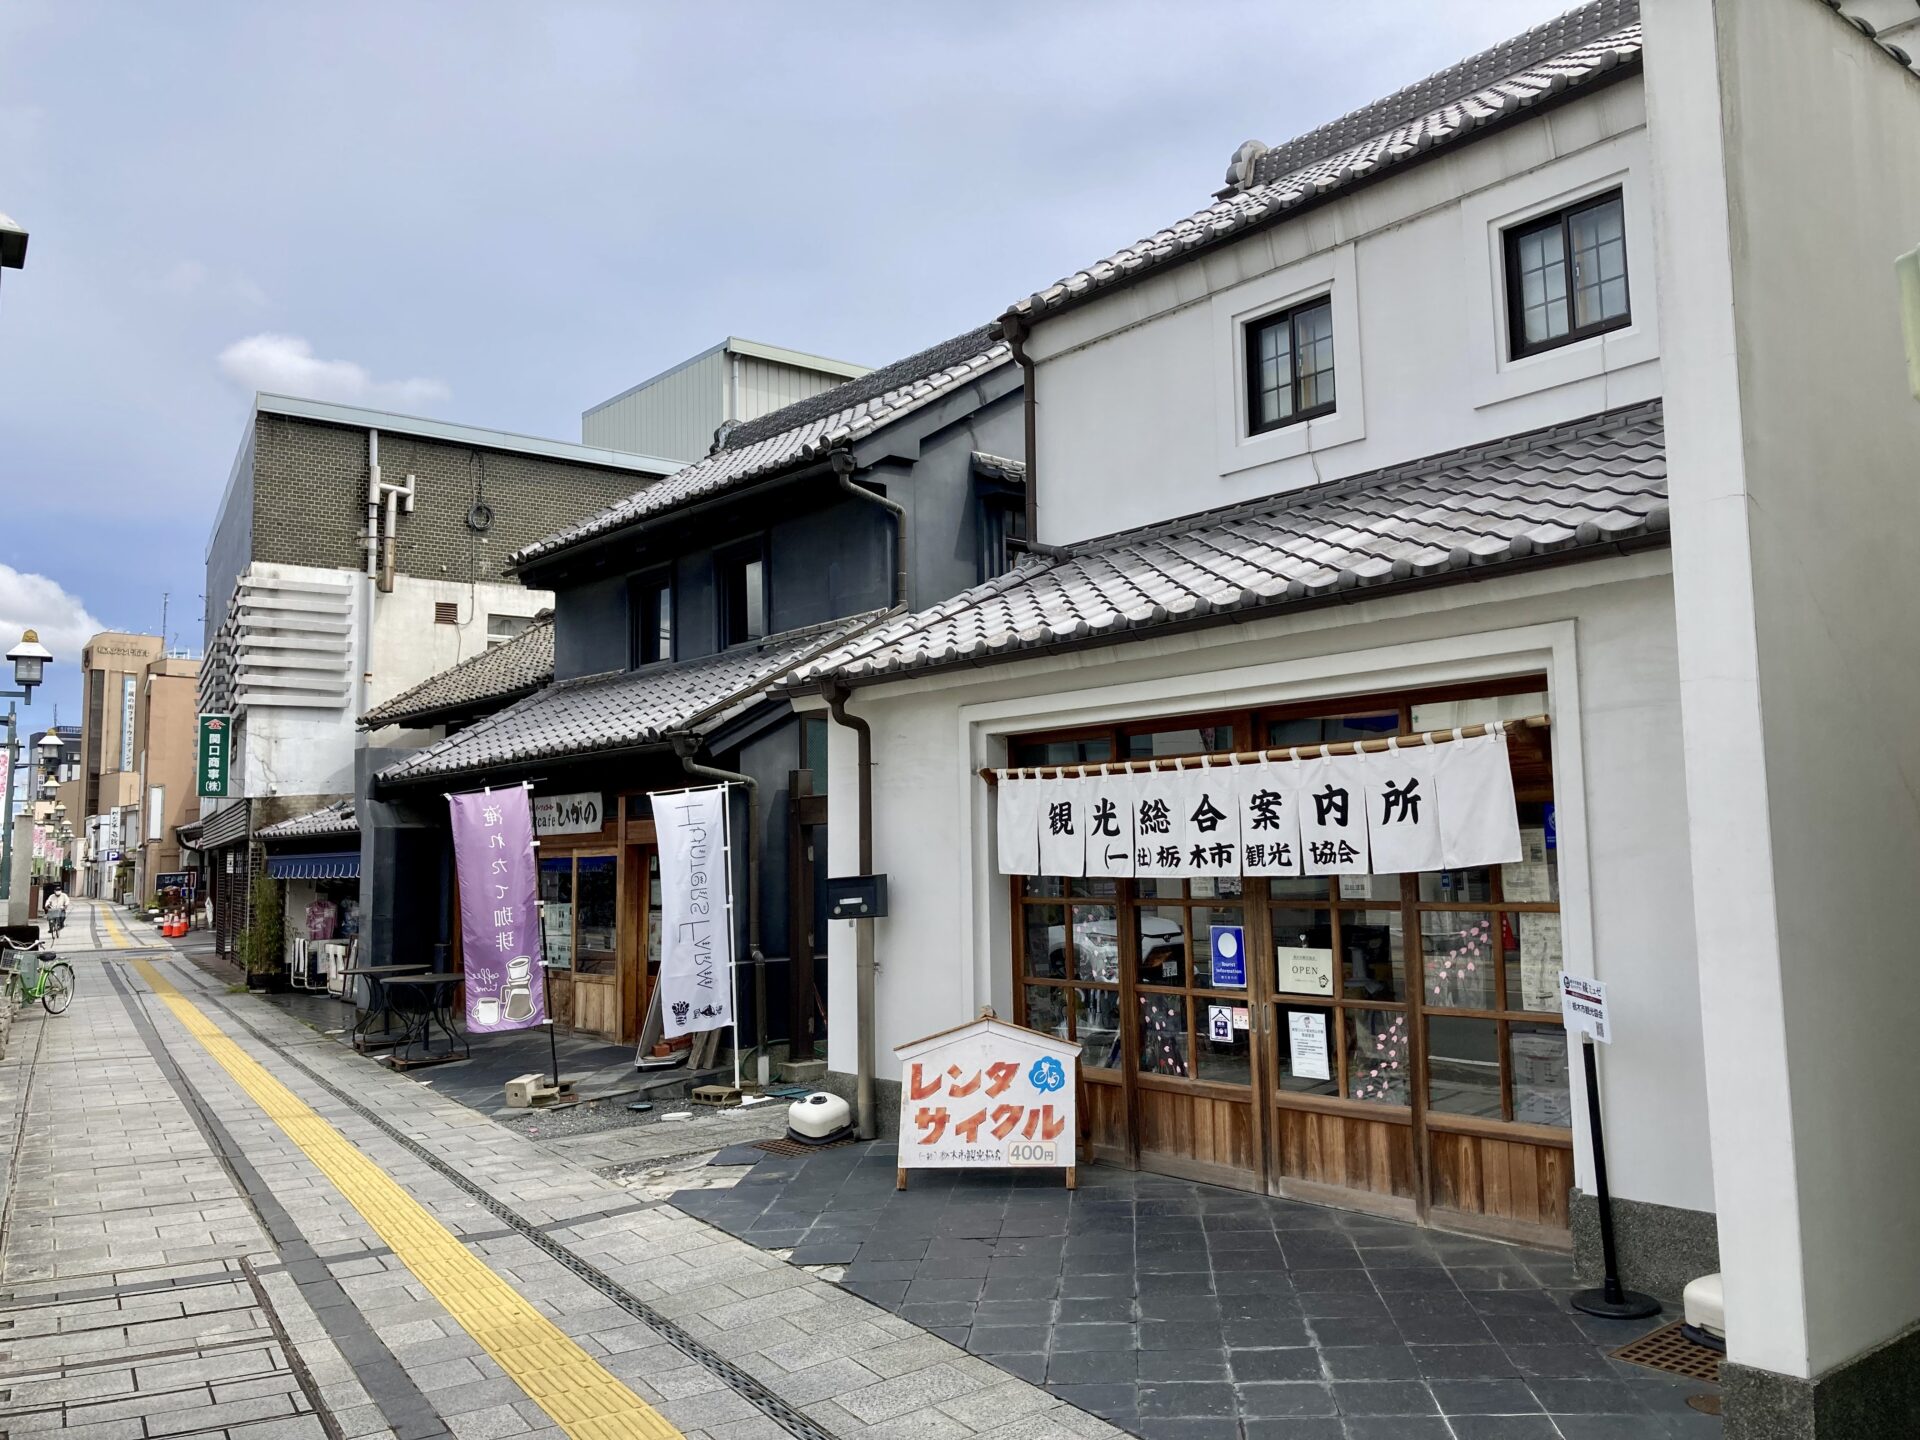 栃木市観光協会